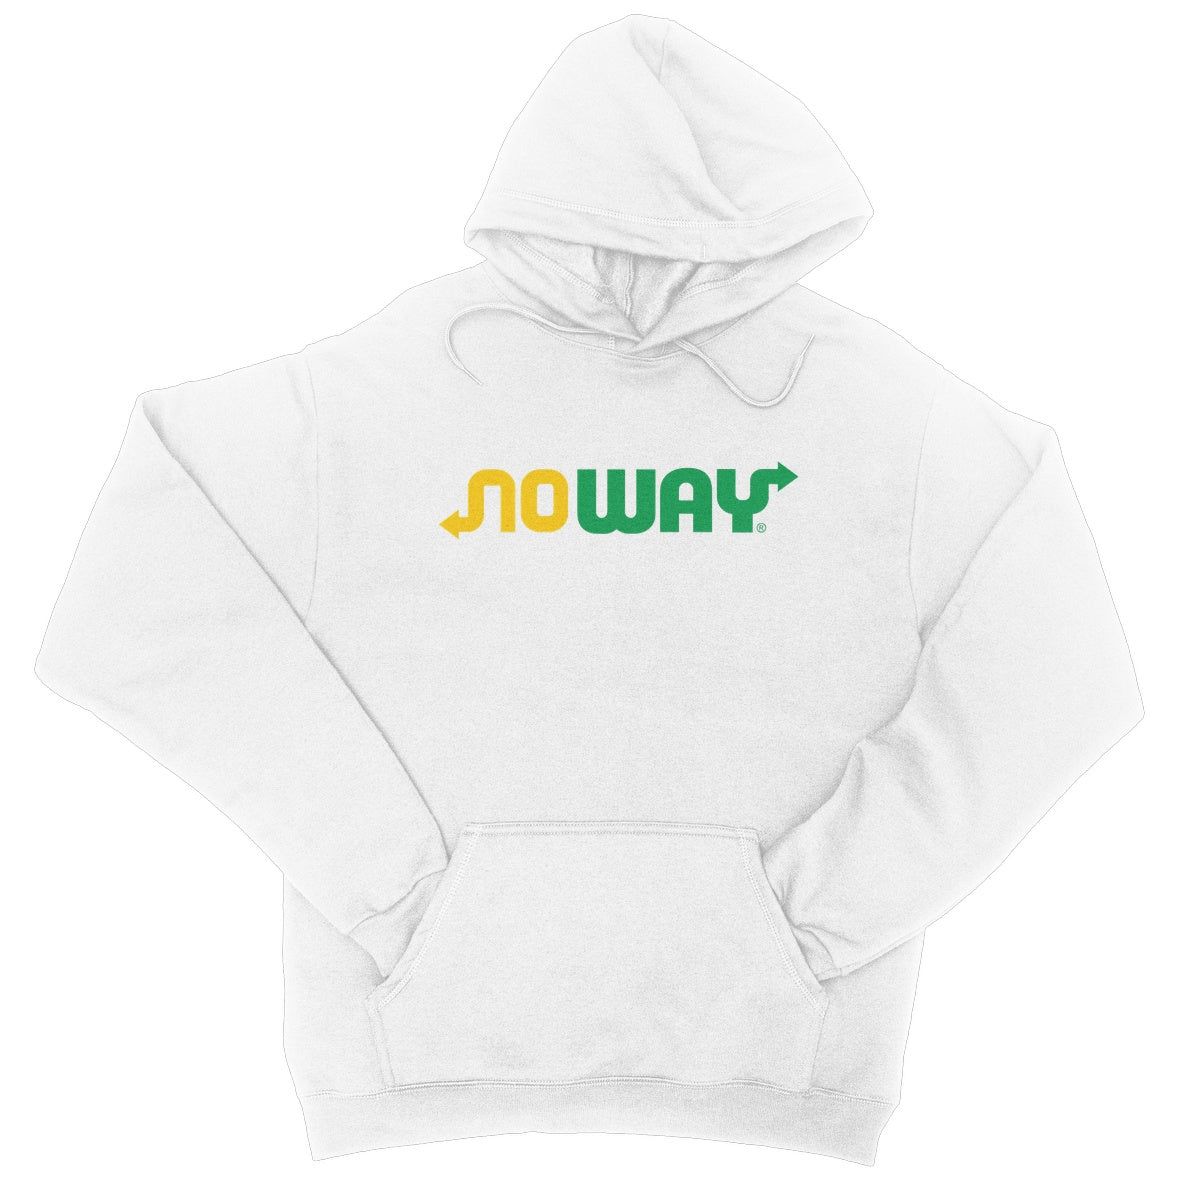 noway hoodie white